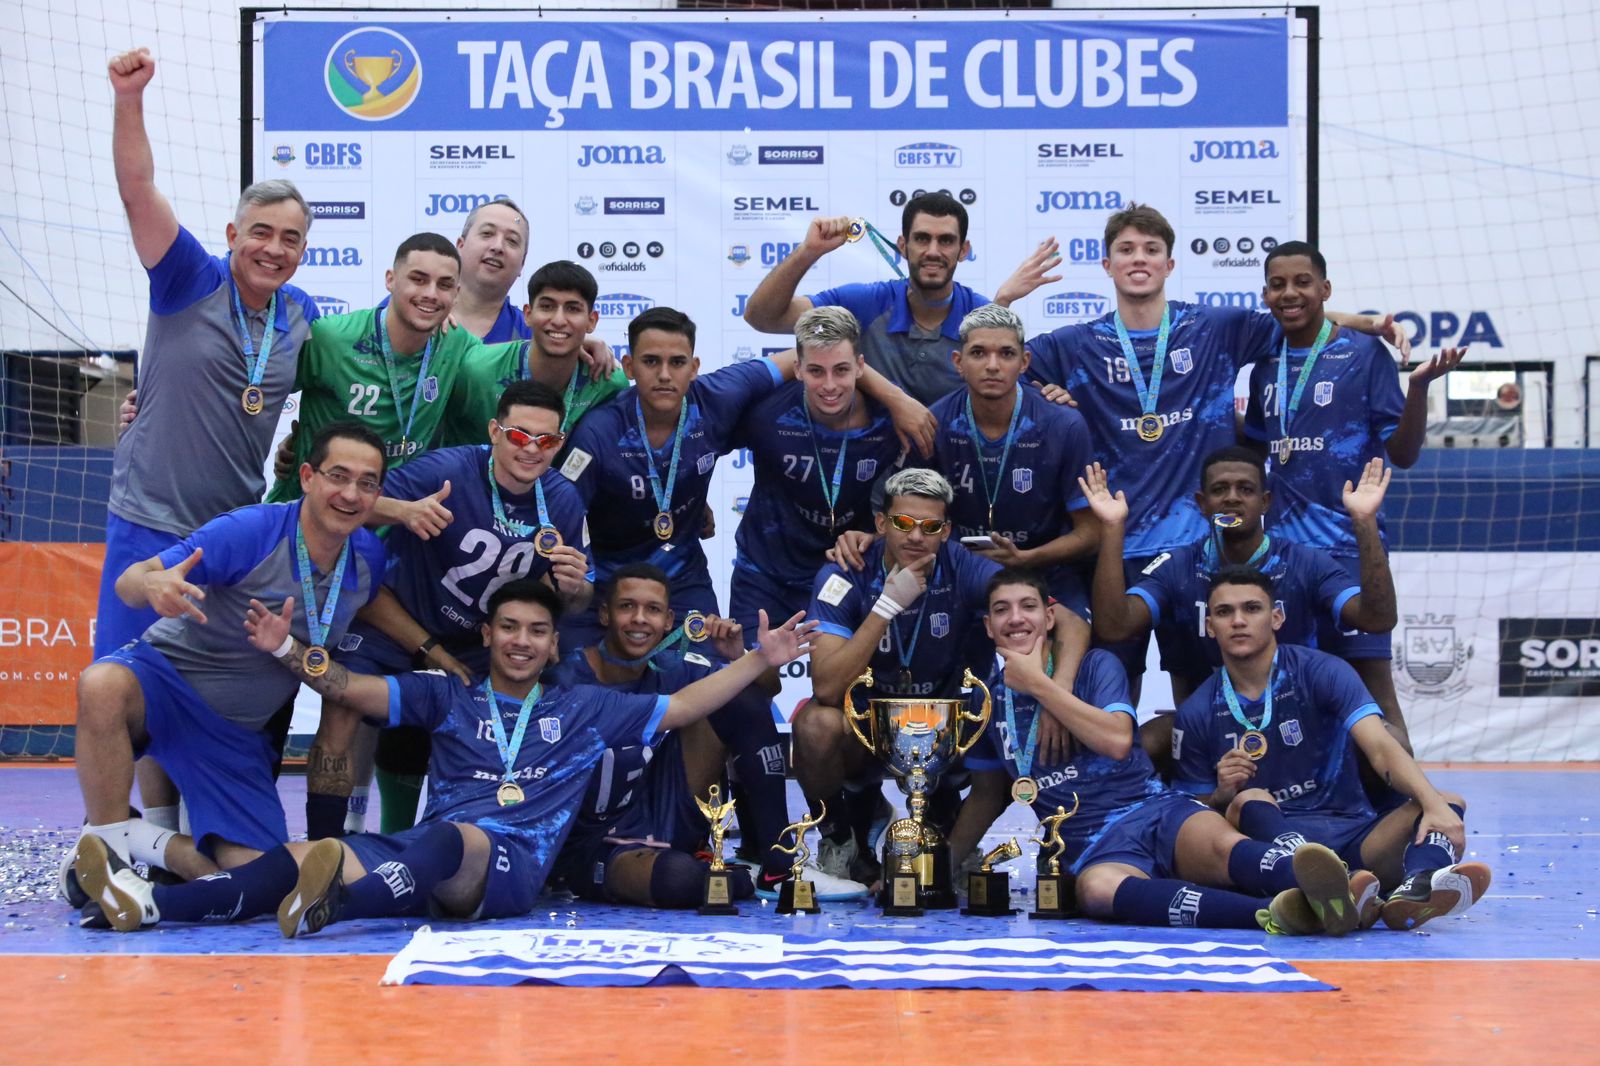 Apresentação do Clube Belo Horizonte, ótima estrutura de lazer e esportes